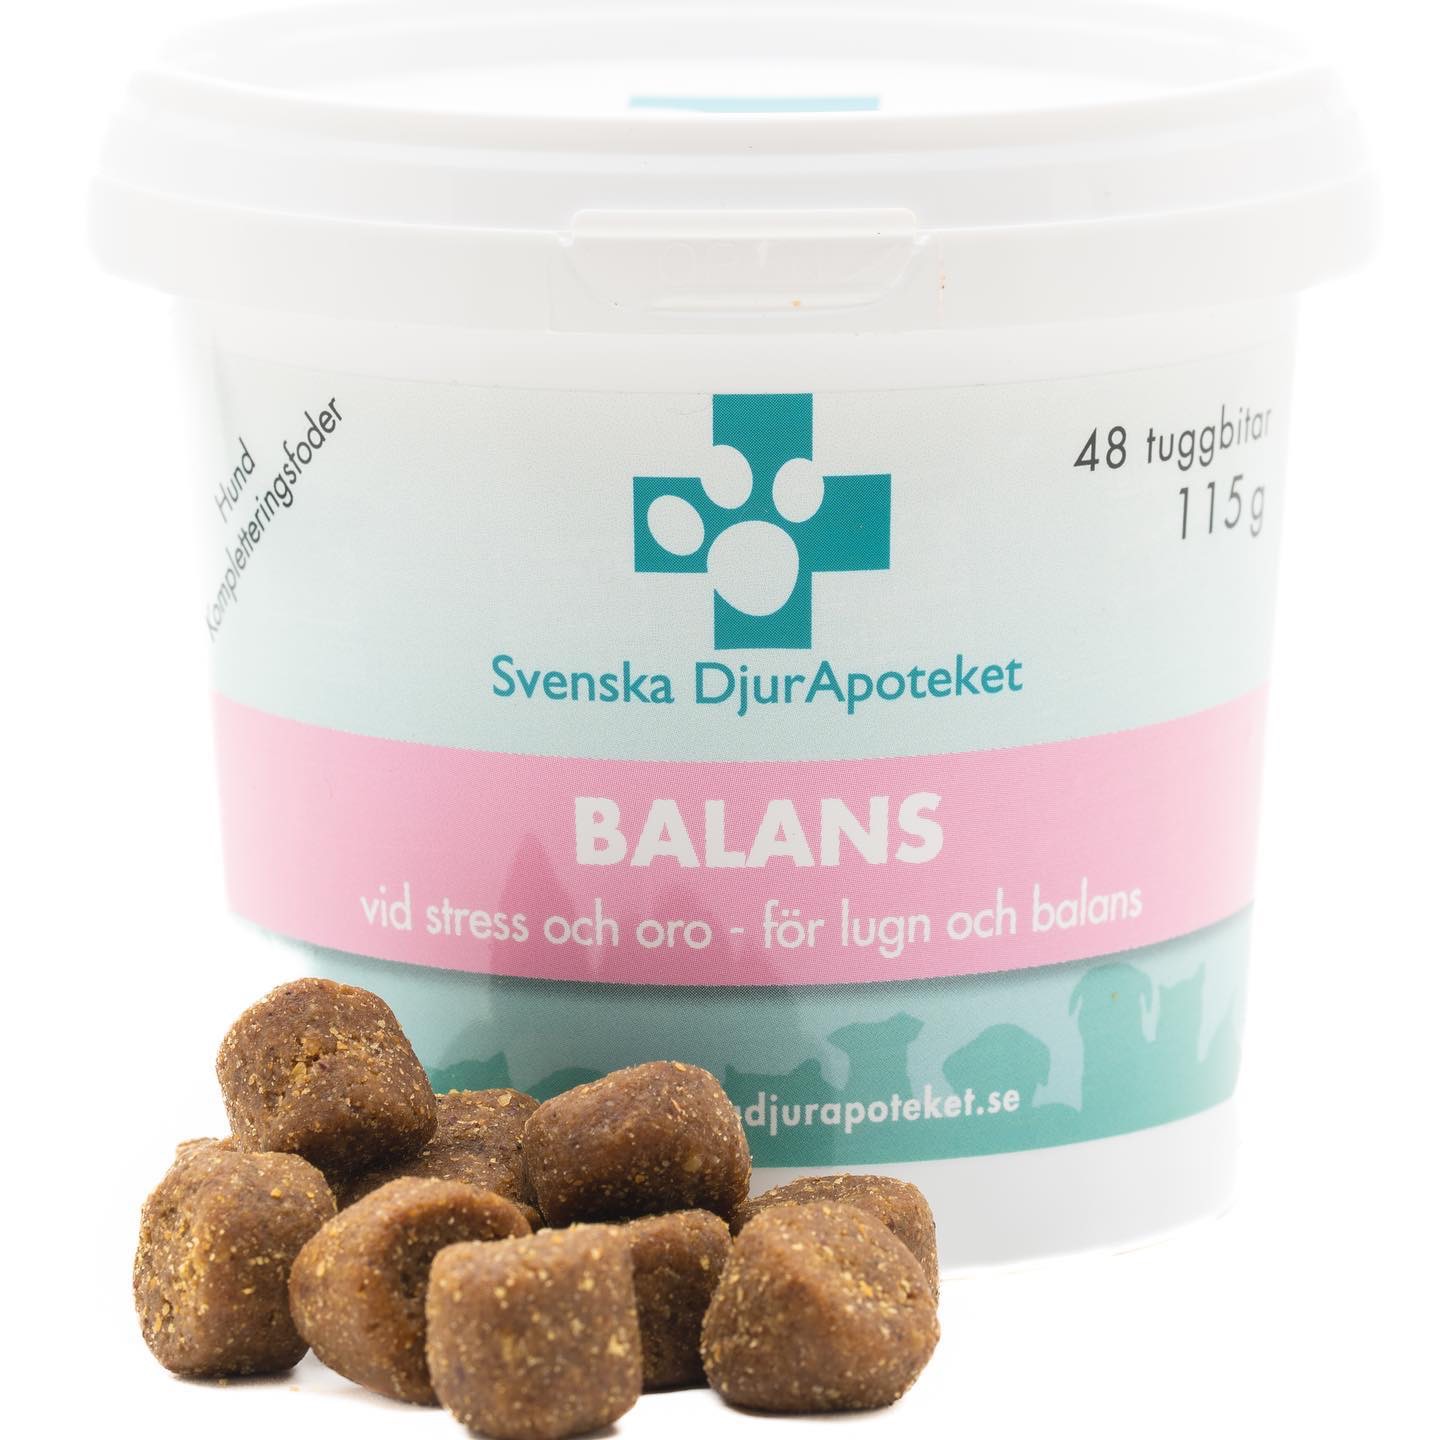 Svenska DjurApotekets Balans är en unik sammansättning som kan användas dagligen när din hund är orolig eller otrygg.